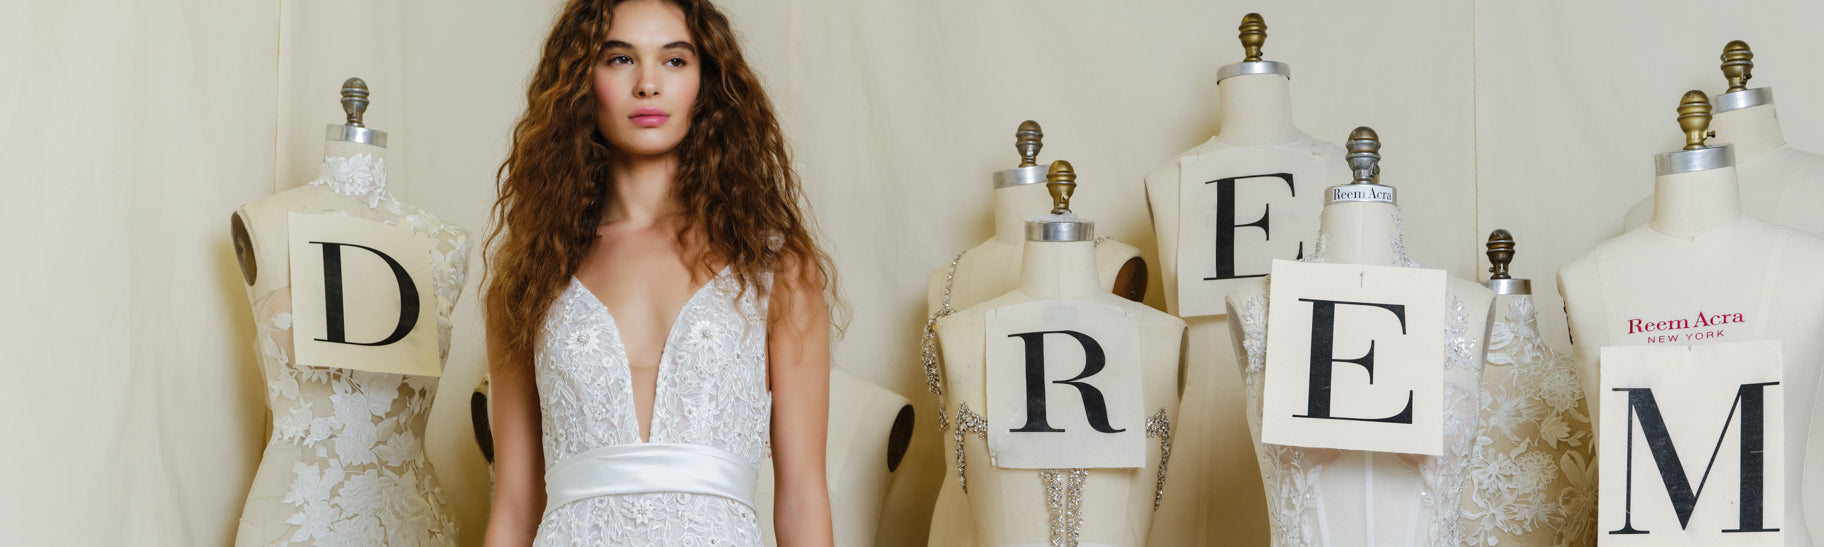 Resort 2015 Graphic Zip-Up Dress, Authentic & Vintage